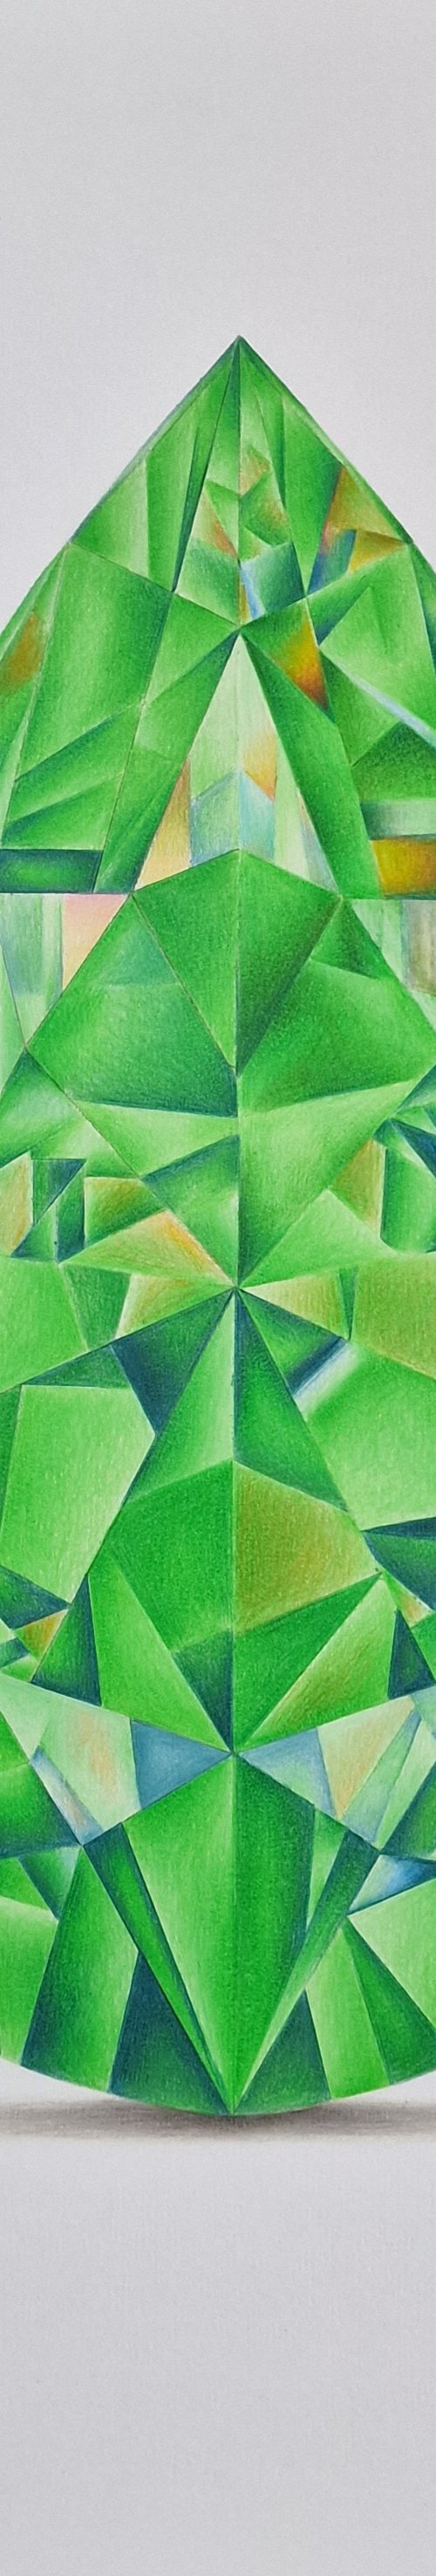 Pear Cut Emerald by Daniel Shipton